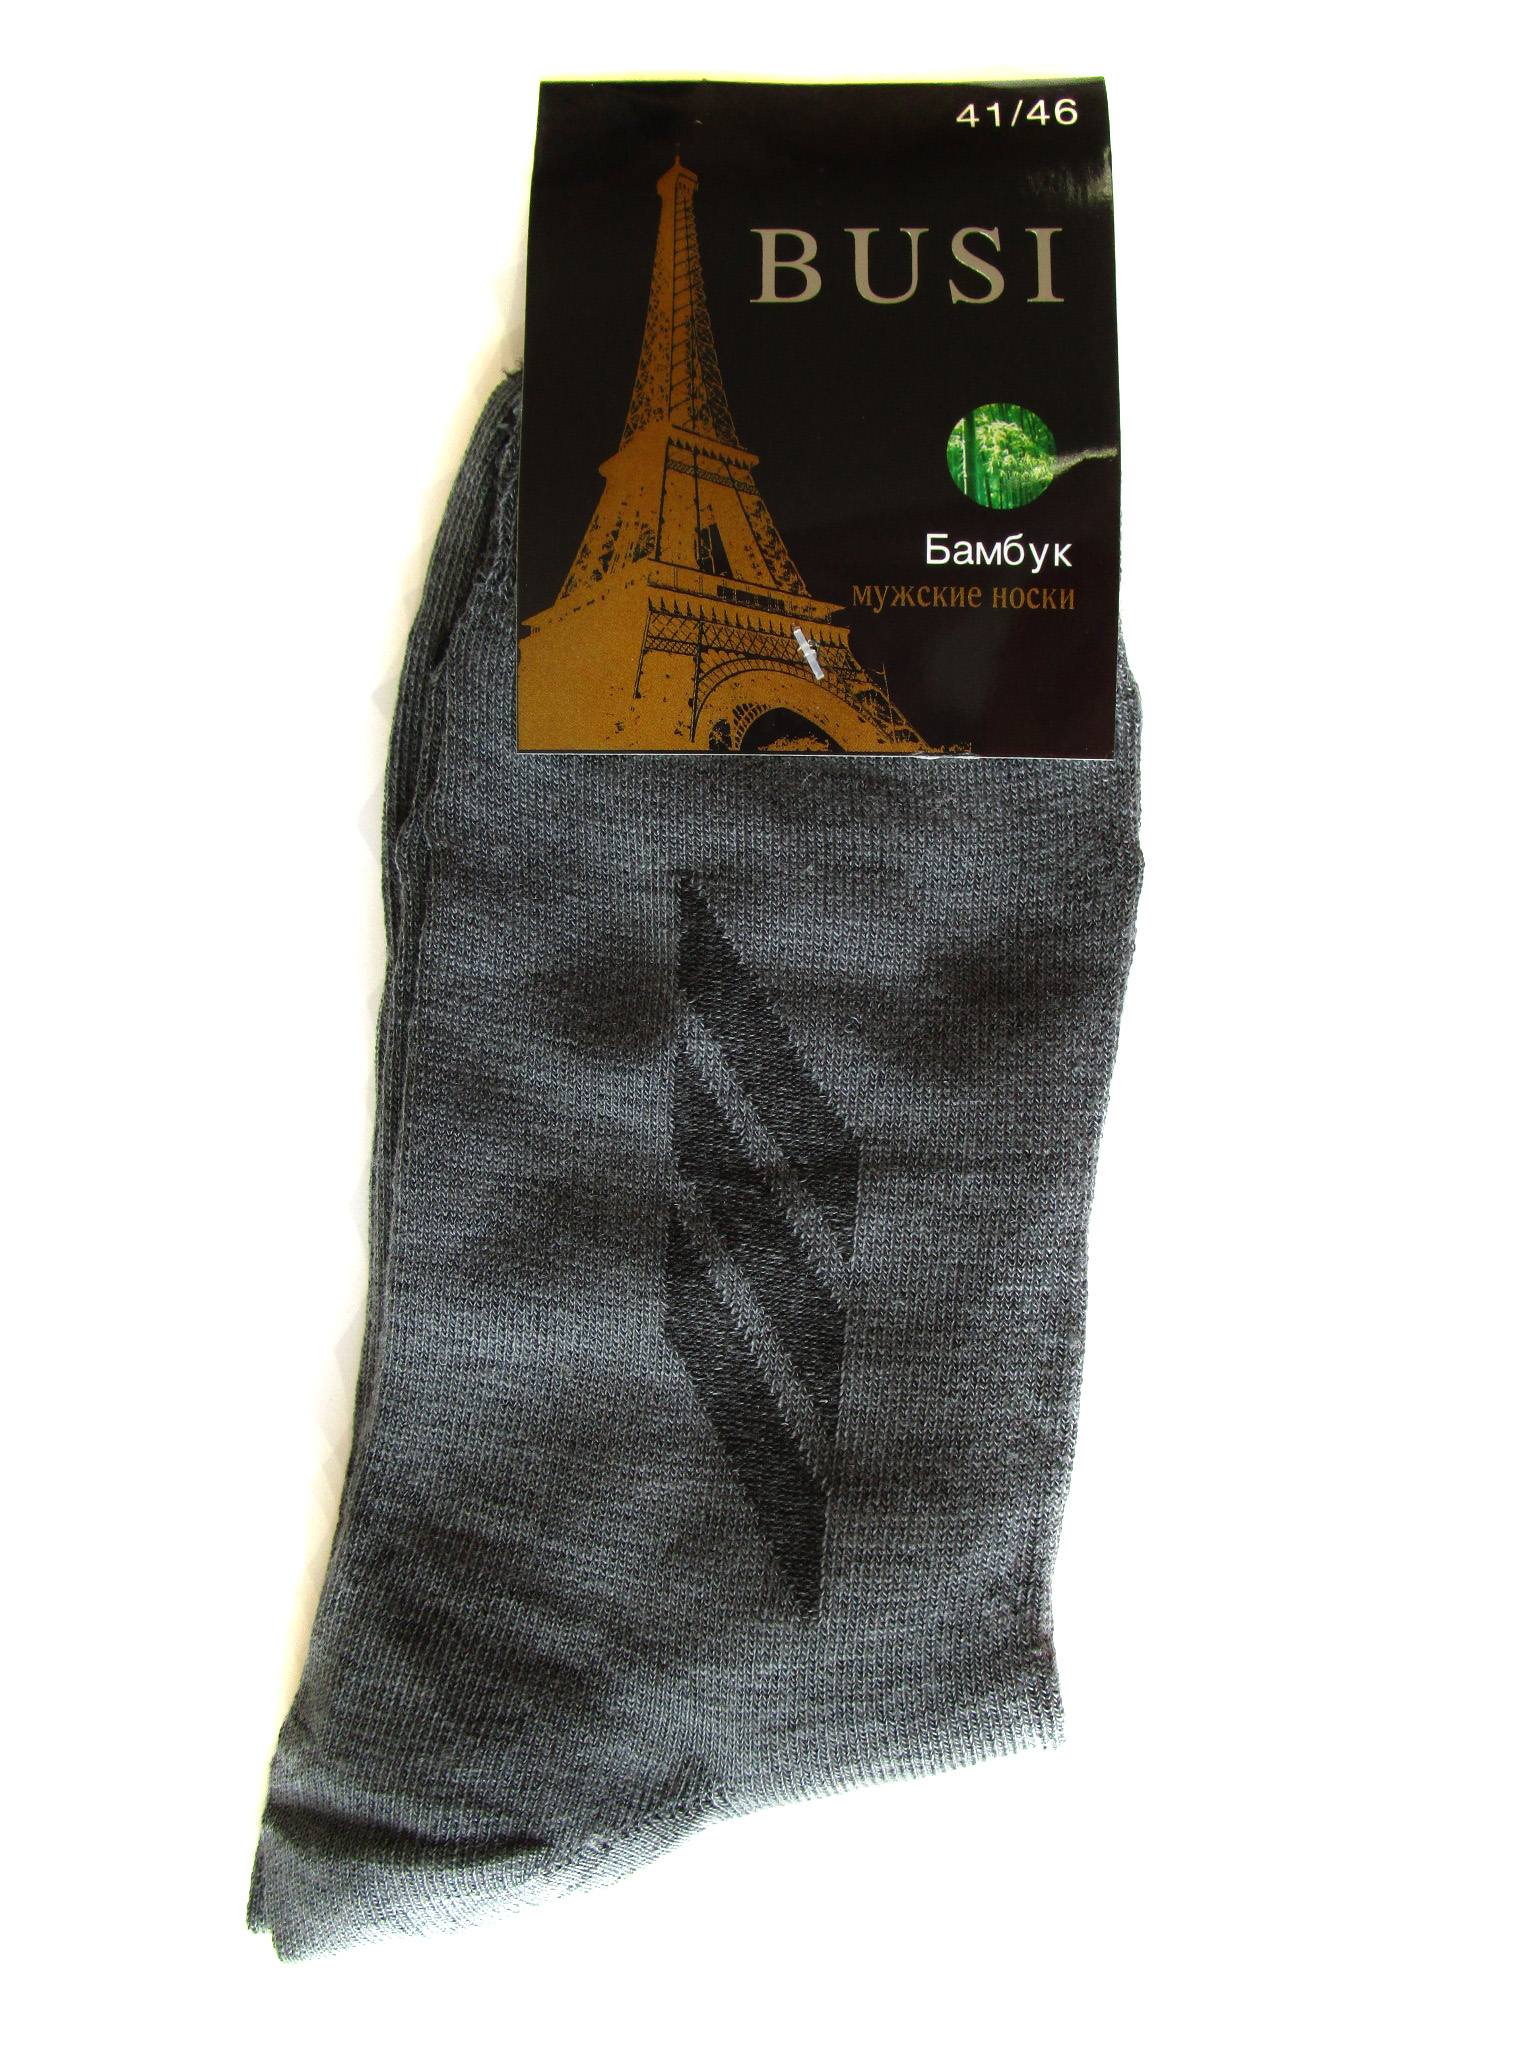 Мужские носки "Busi" (арт.5101)